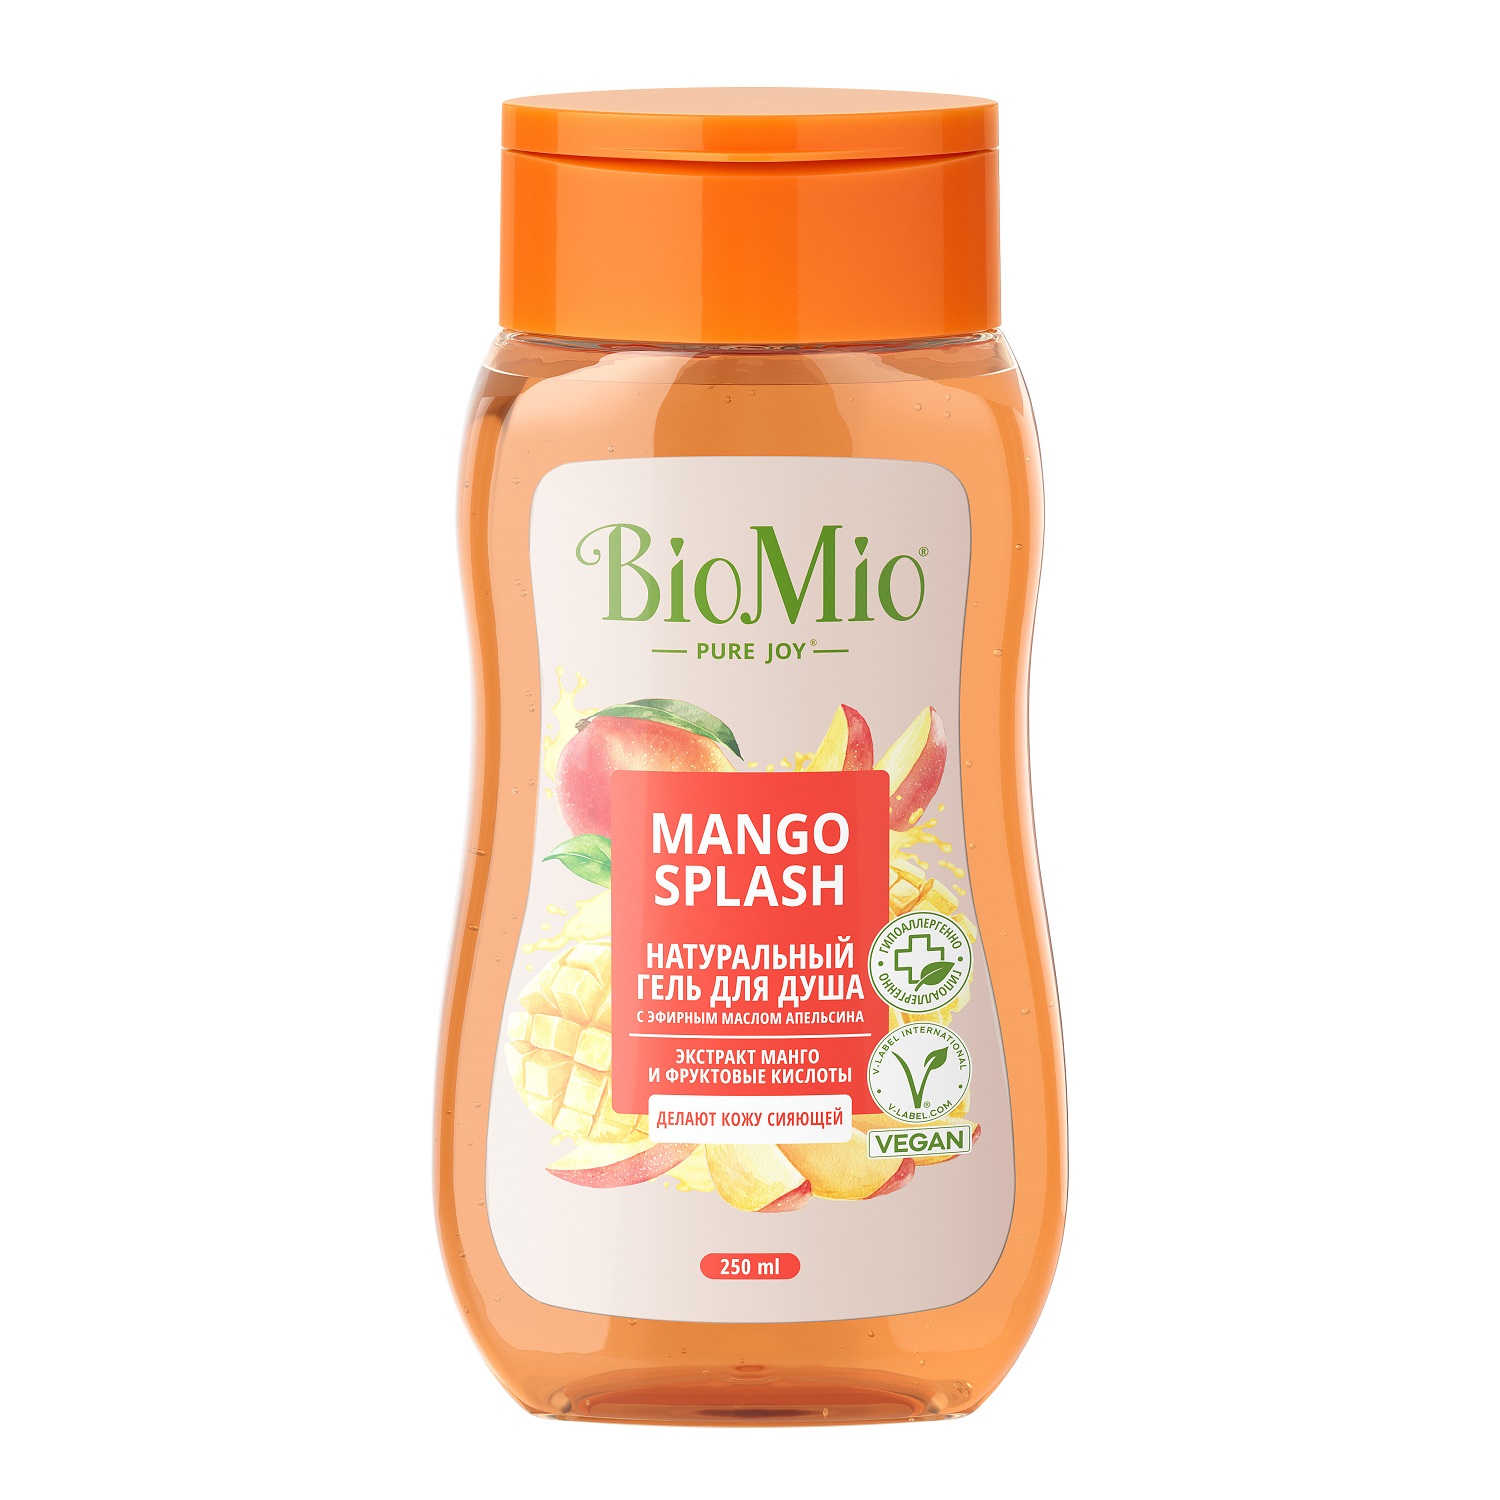 BioMio Гель для душа с экстрактом манго Mango Splash, 250 мл (BioMio, Для ванны и душа)